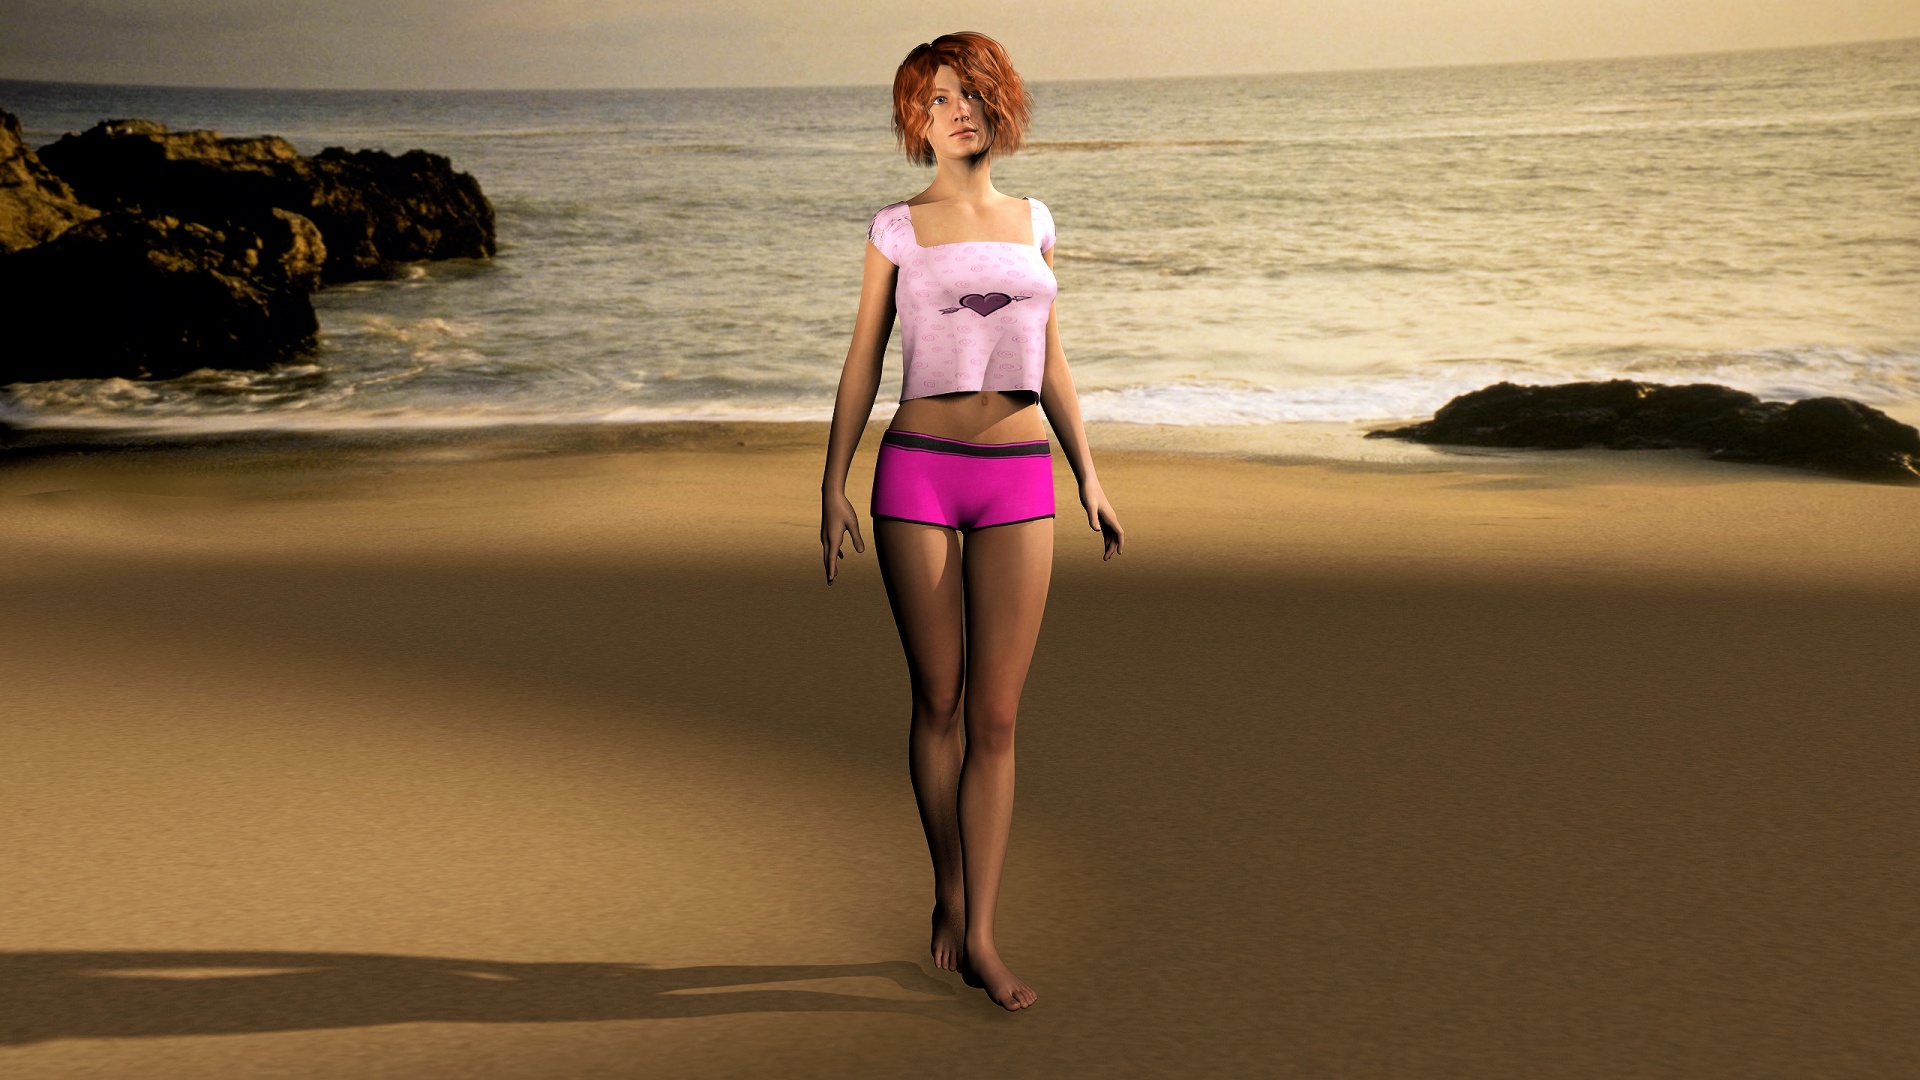 Girl in bikini walking